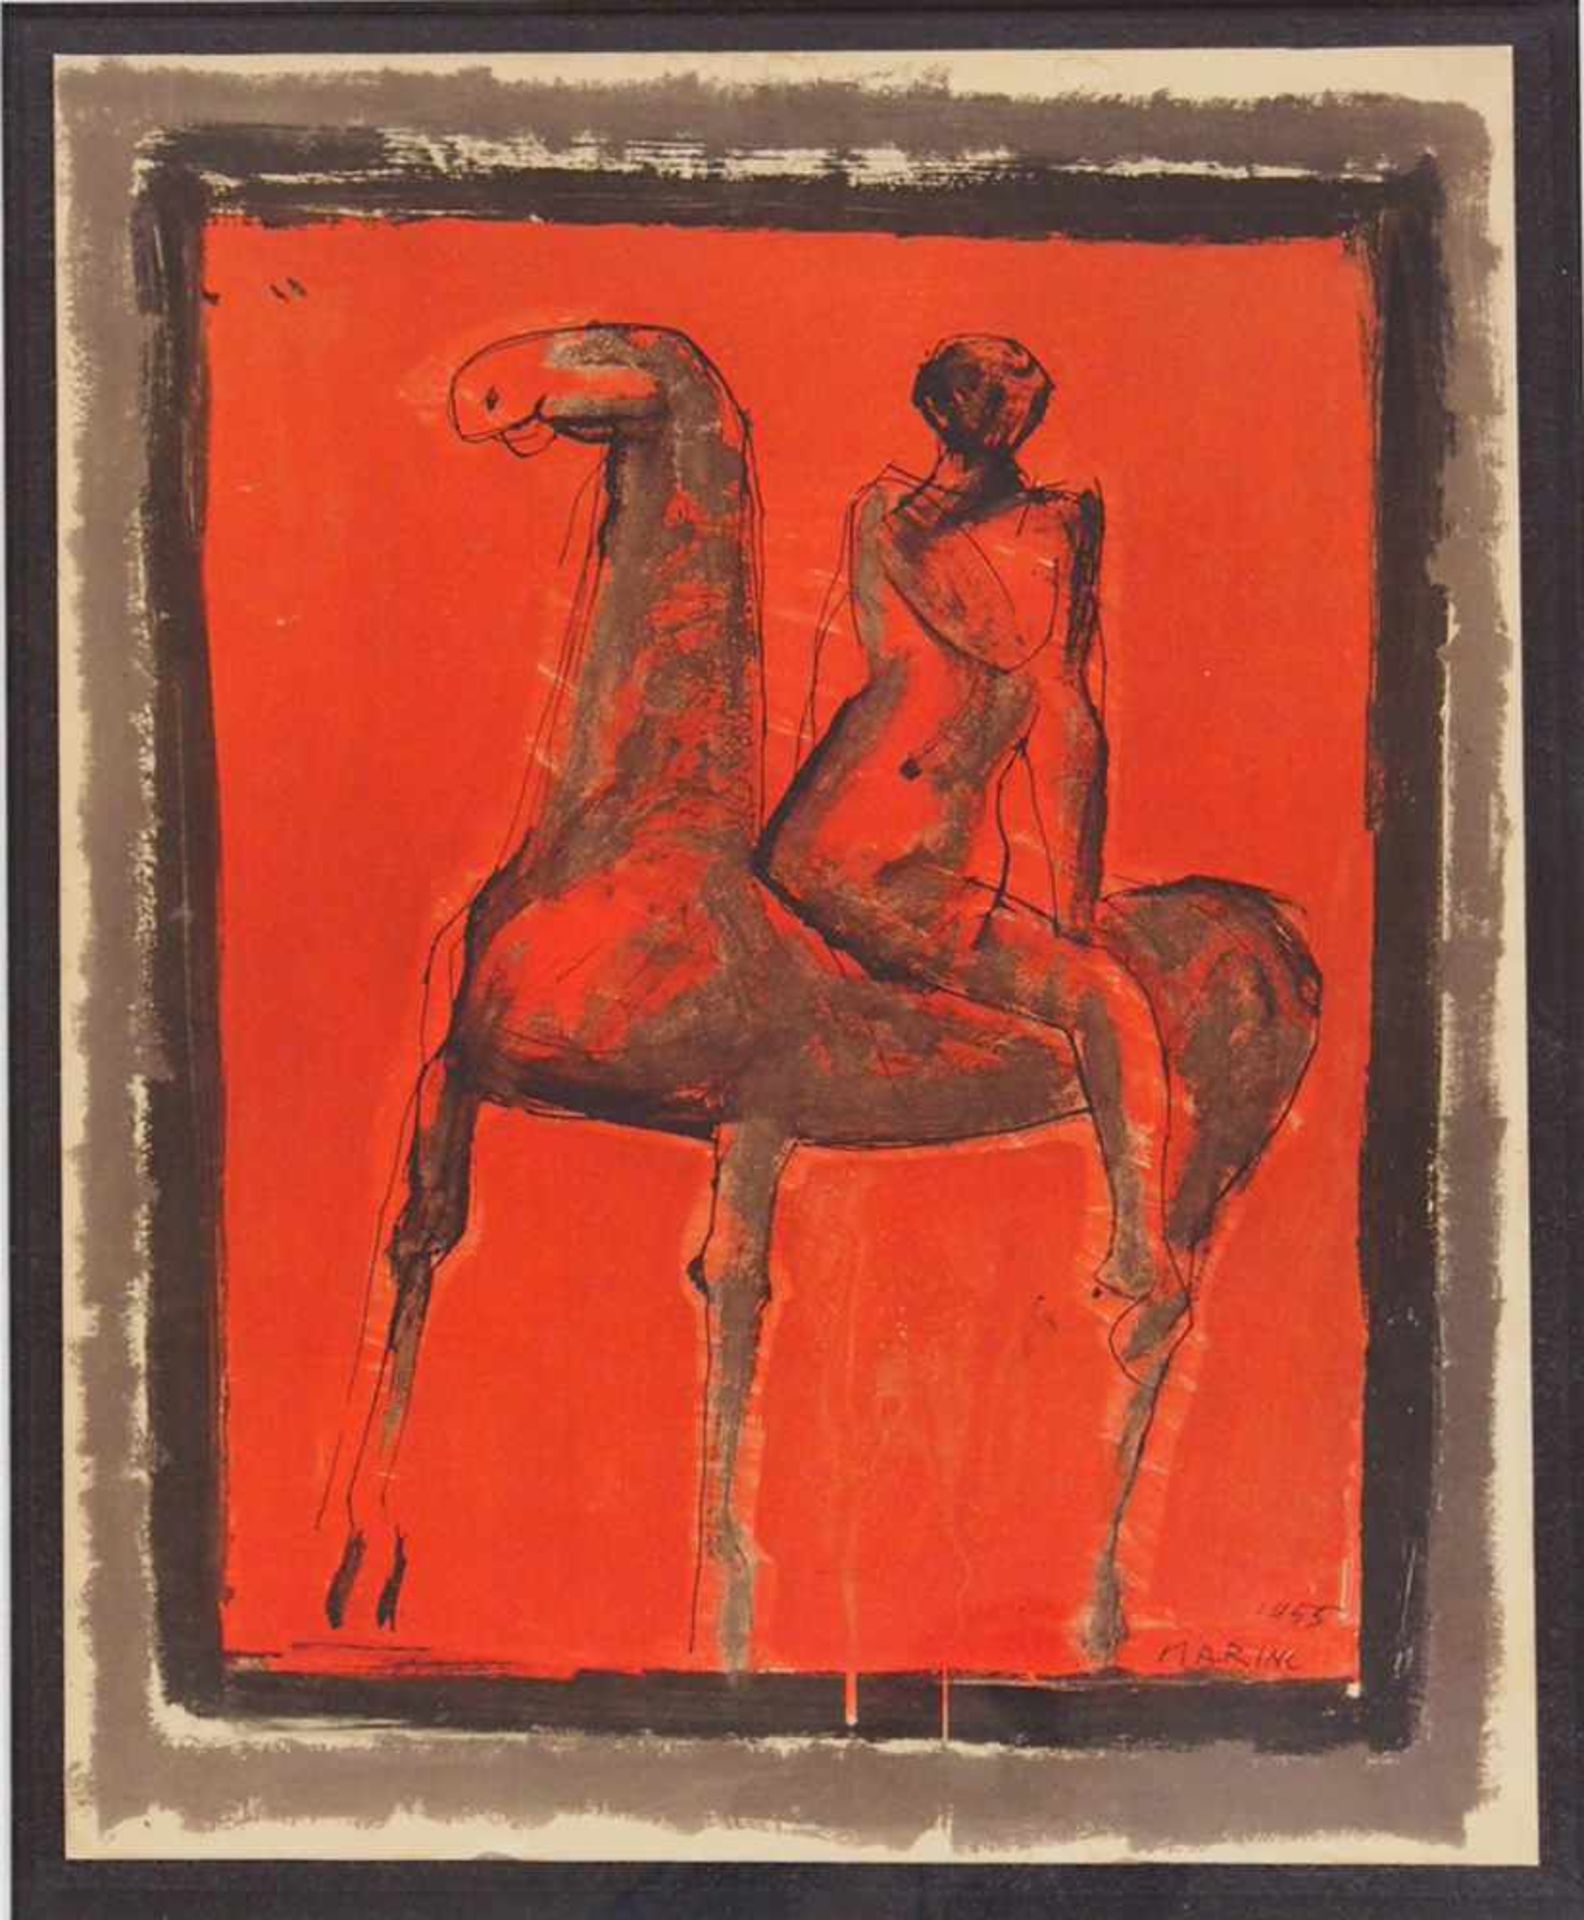 MARINI, Marino1901-1980ReiterFarblithographie auf Karton, 1955, 57 x 45 cm, gerahmt unter Glas und